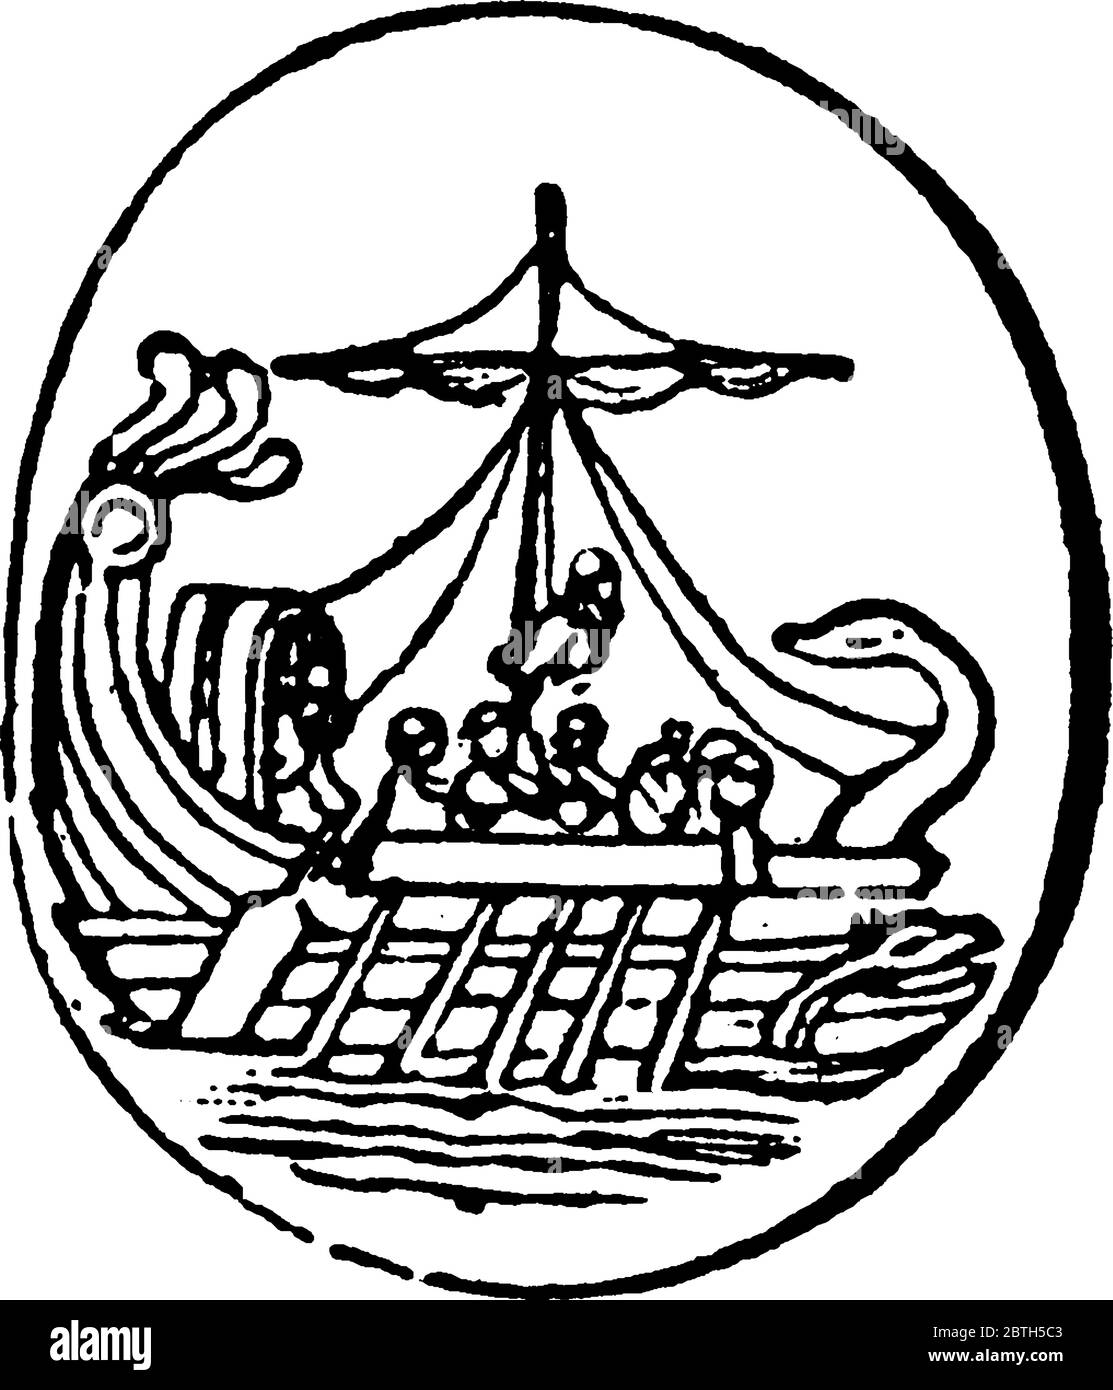 Aux deux extrémités de la cour d'un navire, des cordes ont été attachées, qui ont passé par-dessus le sommet du mât, et ainsi soutenu la cour. Quand un orage Illustration de Vecteur